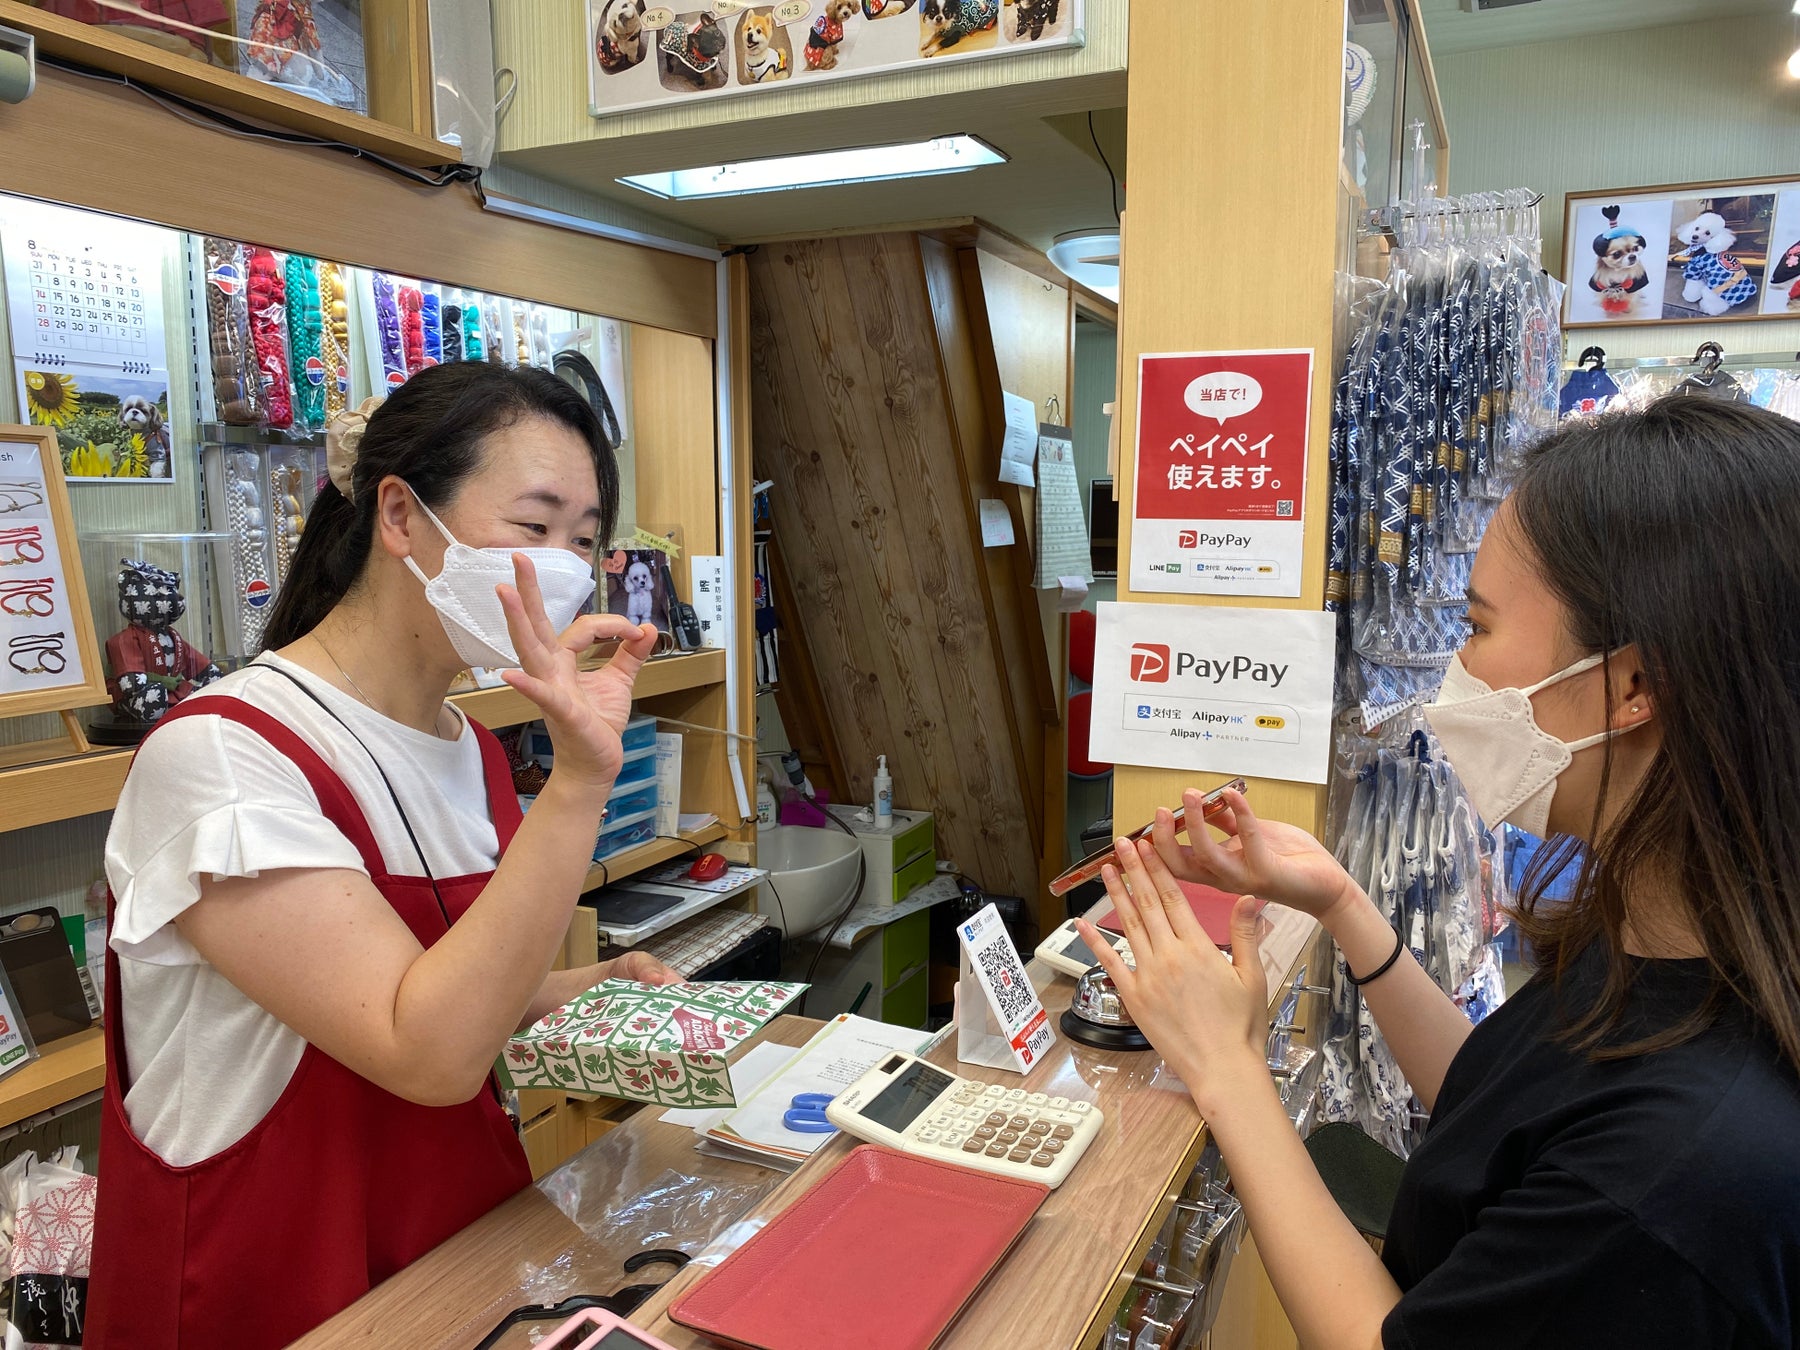 浅草の仲見世商店街でアリペイを利用してペット用の着物を購入する中国人観光客